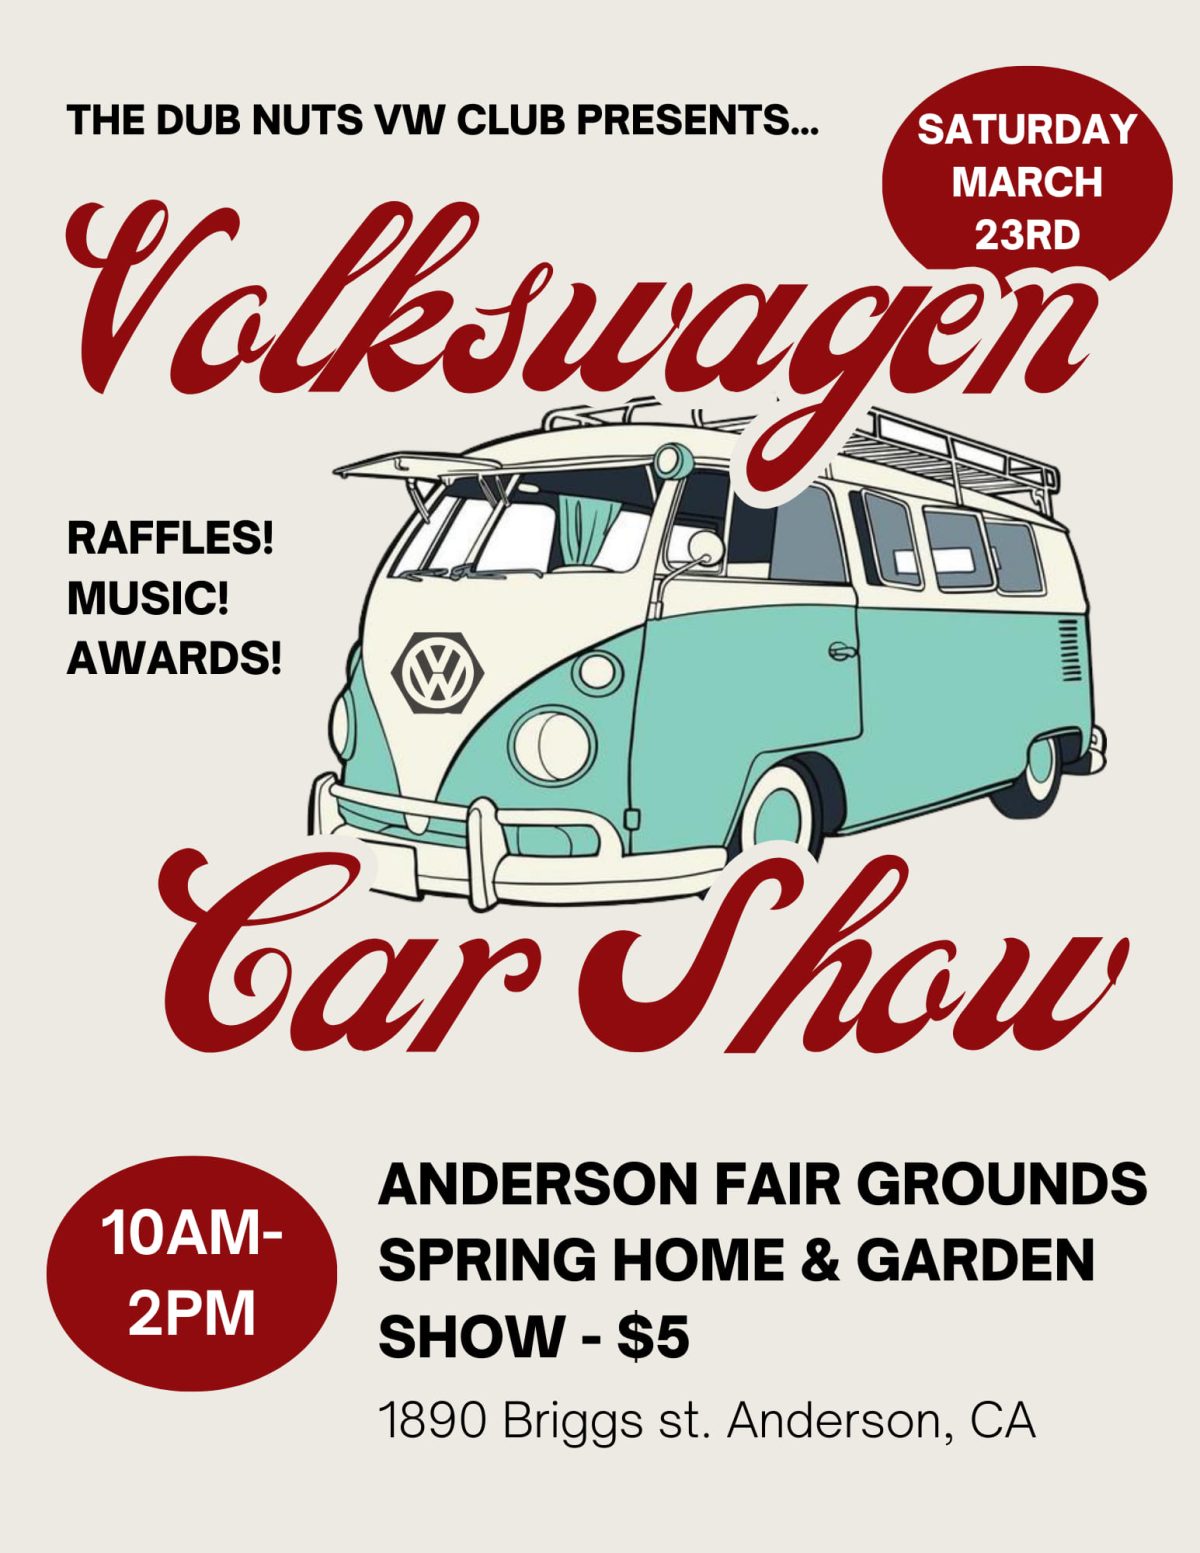 Volkswagen Car Show